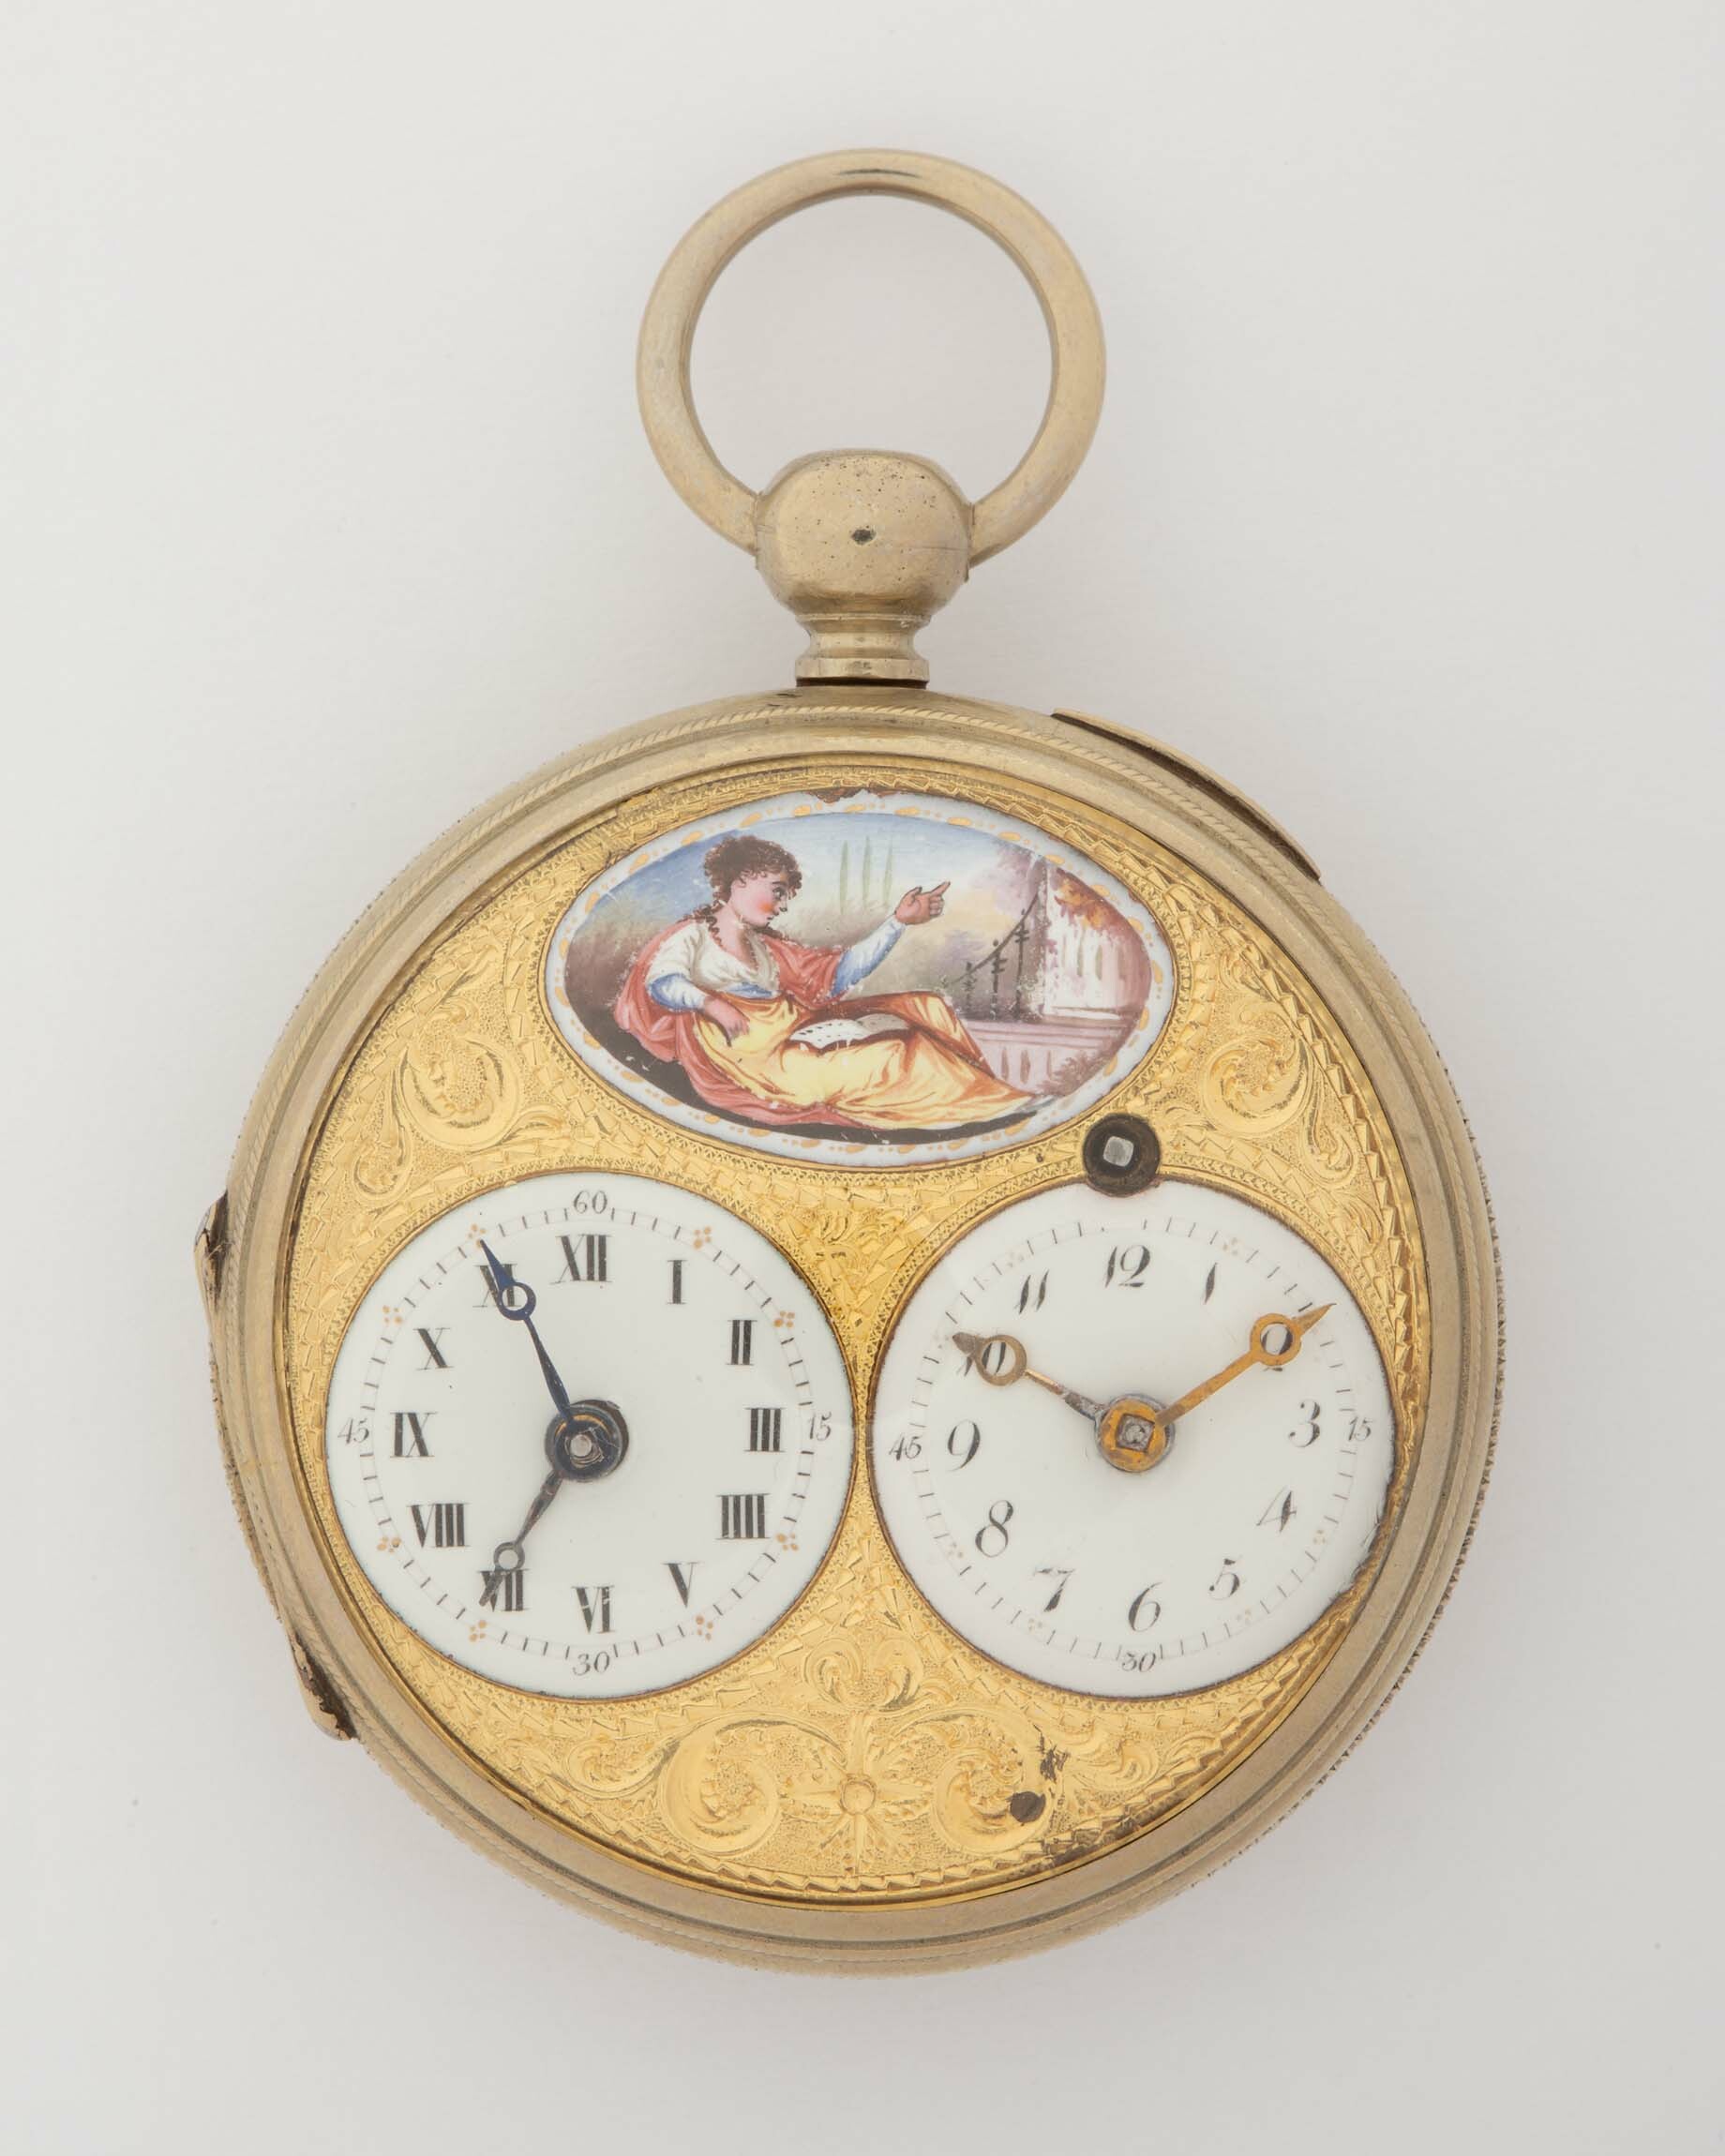 Taschenuhr, Coulin Frères, Genf, um 1800 (Deutsches Uhrenmuseum CC BY-SA)